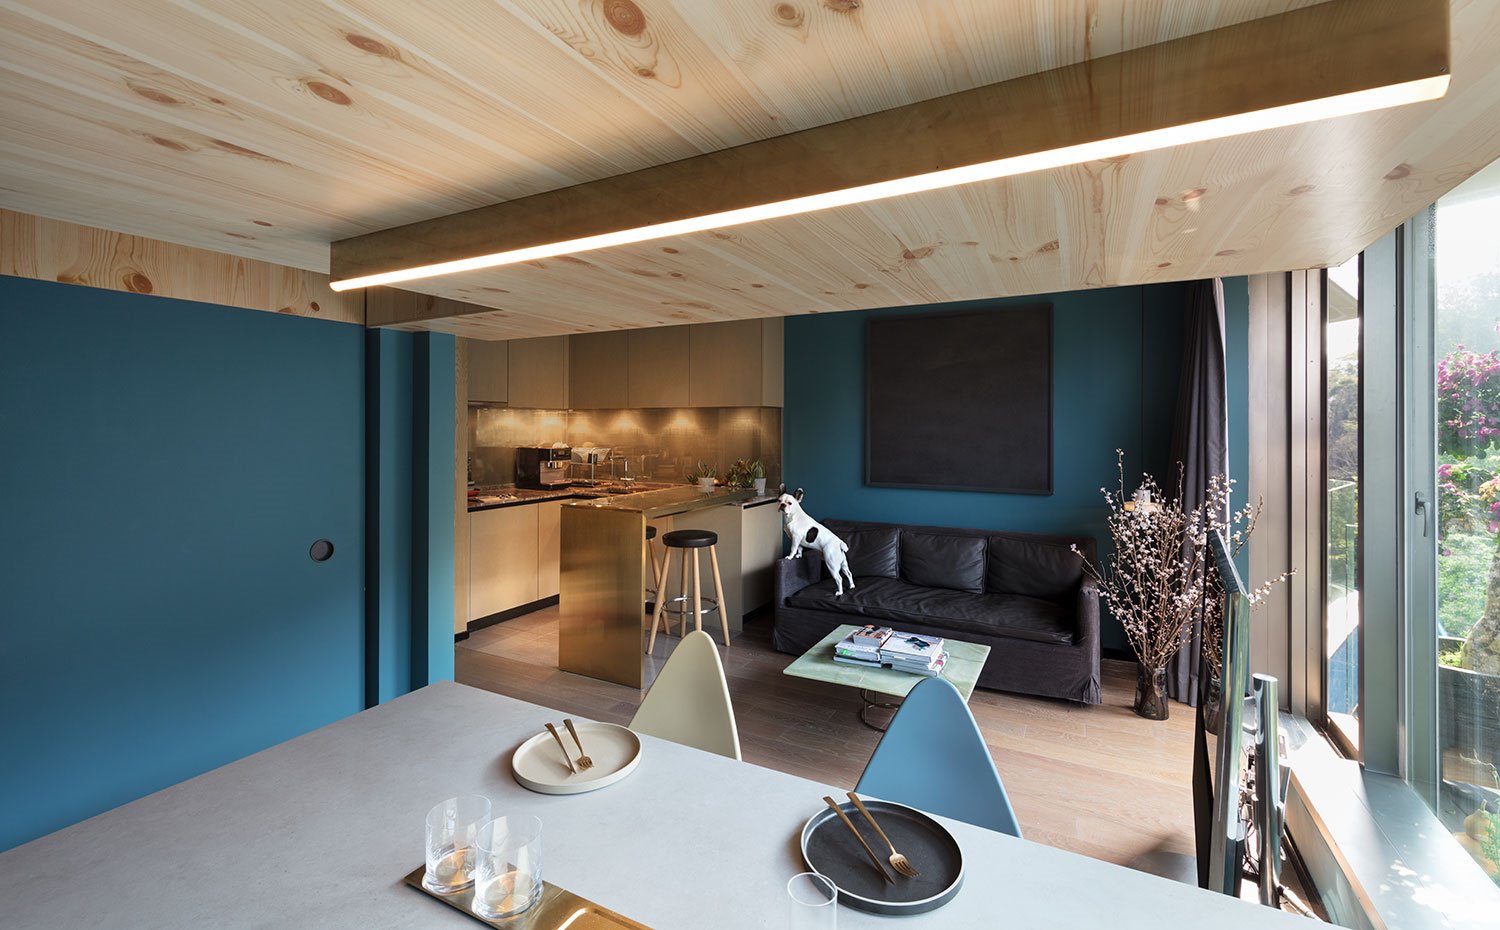 Cocina y comedor abiertos junto a comedor, paredes pintadas de azul con revestmiento de madera, sofá en negro